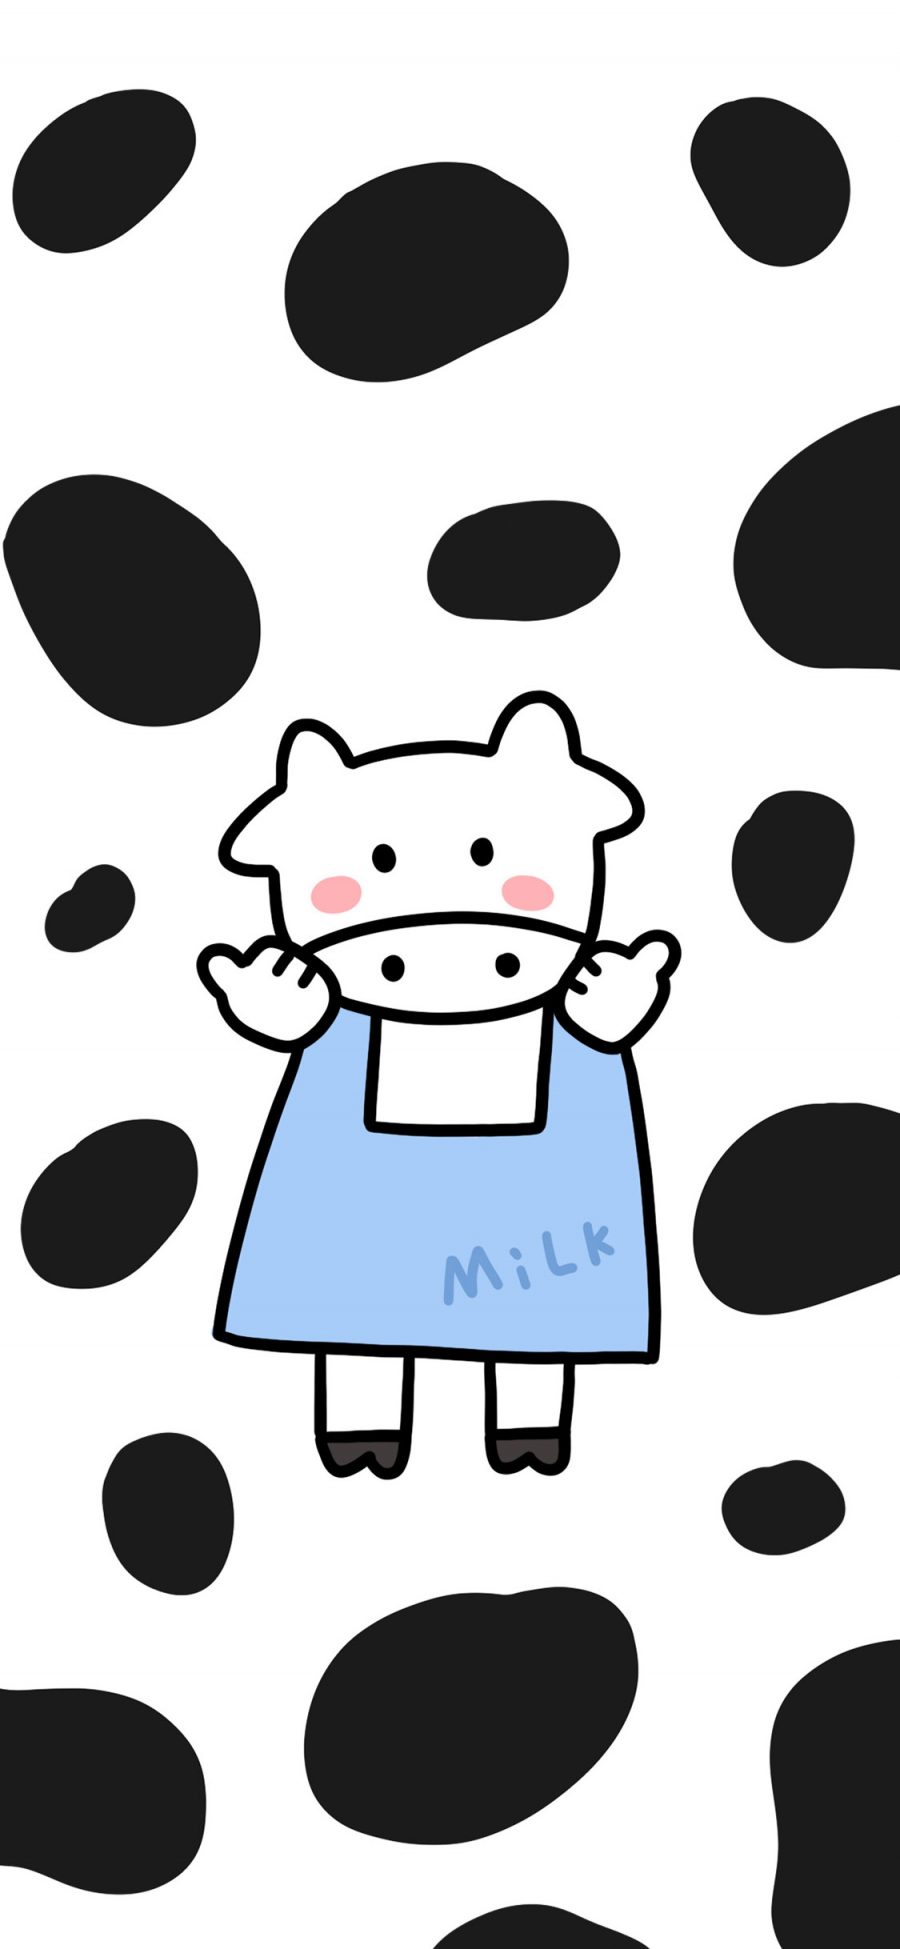 [2436×1125]卡通 奶油 milk 可爱 苹果手机动漫壁纸图片